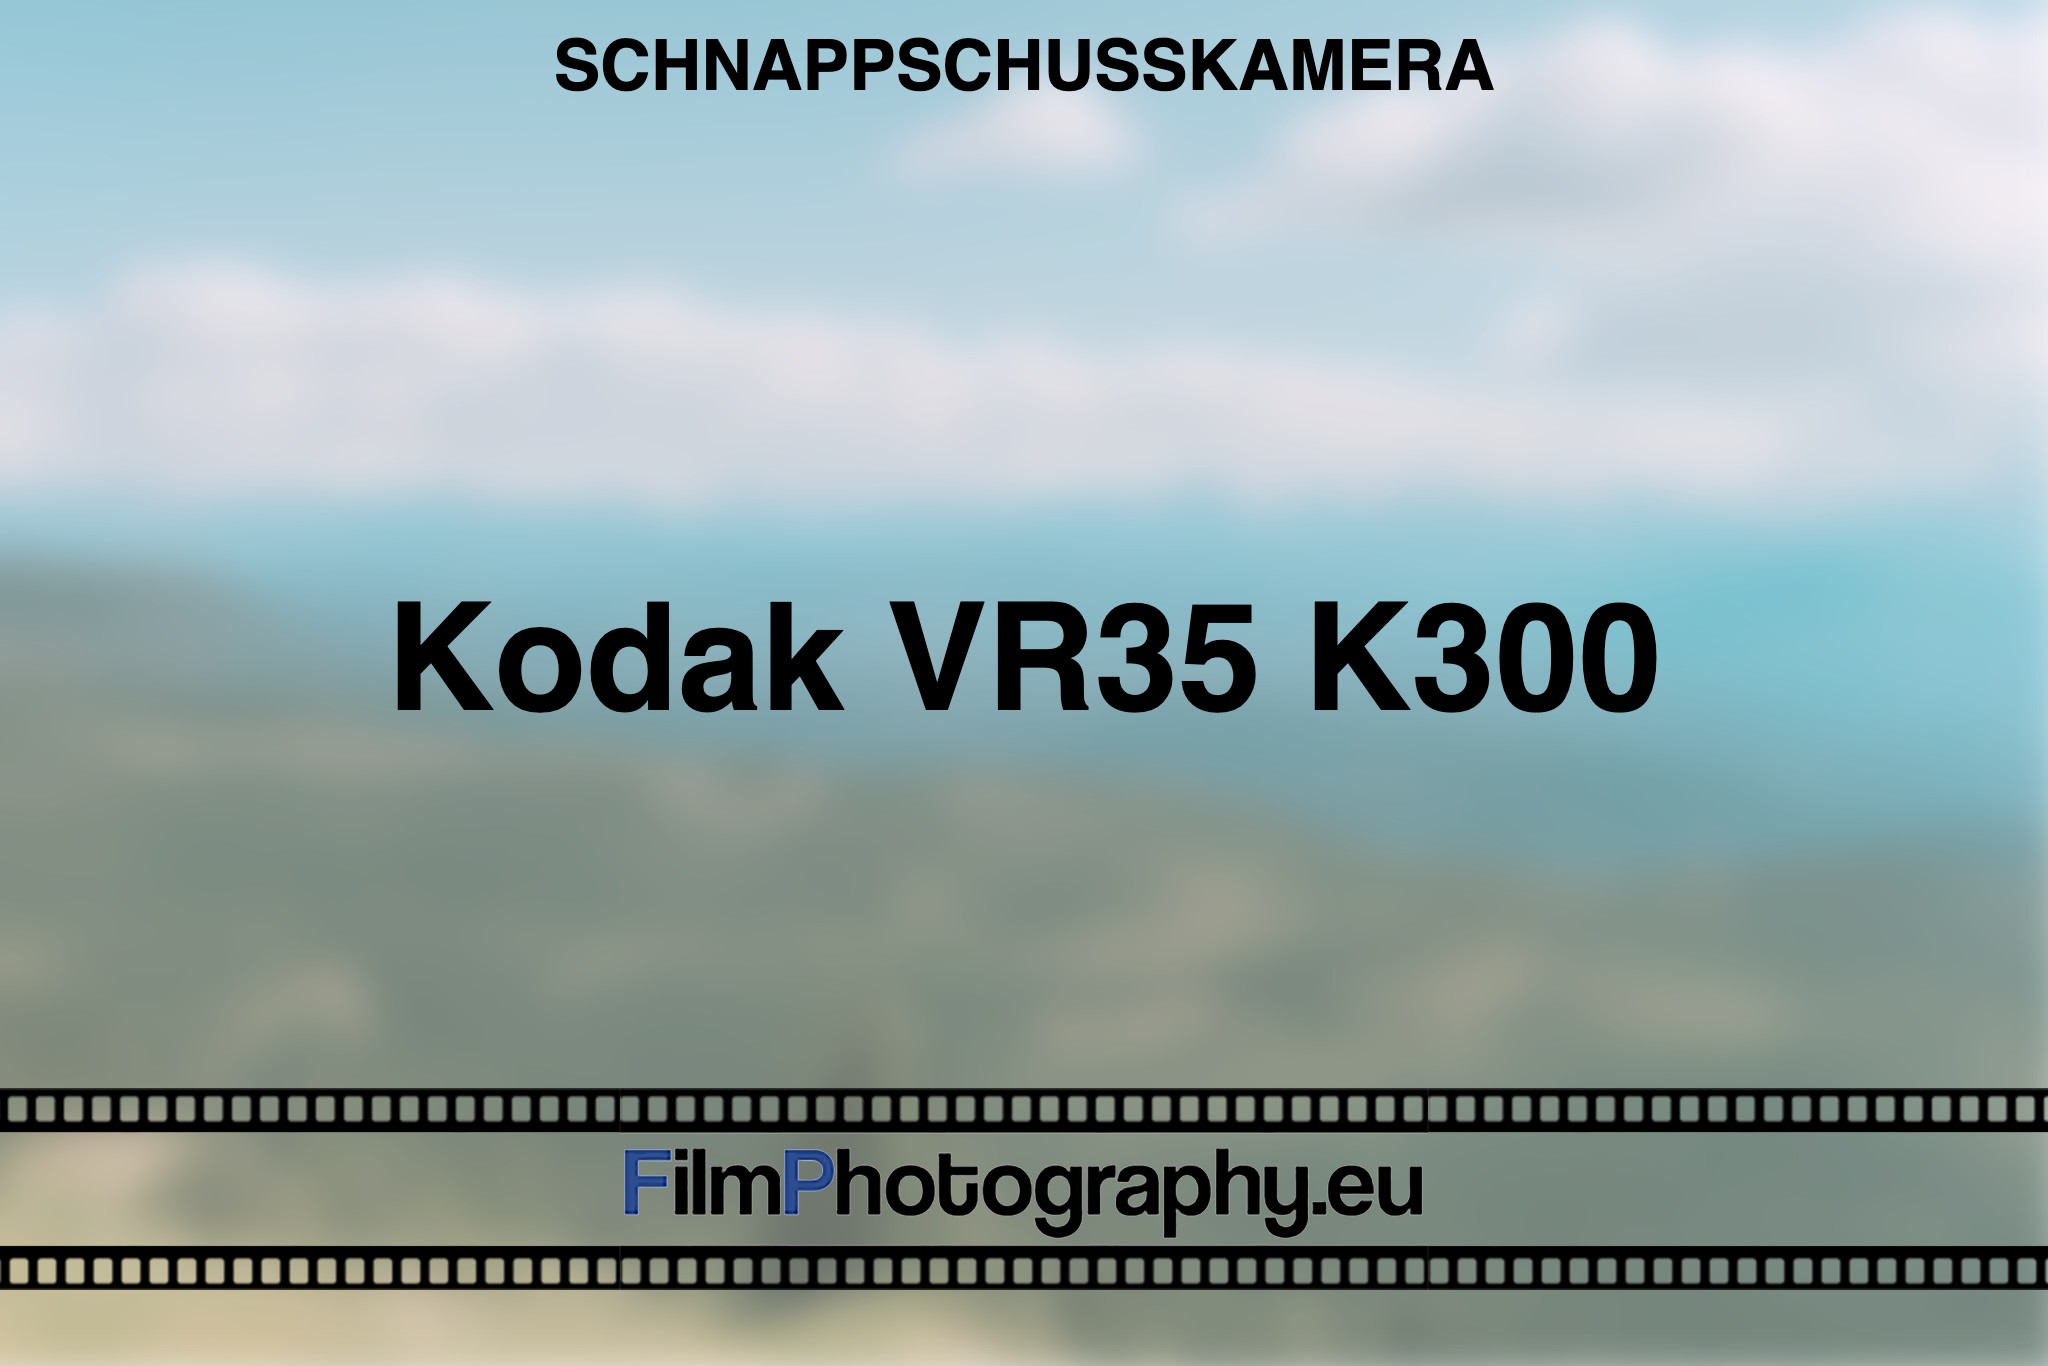 kodak-vr35-k300-schnappschusskamera-bnv